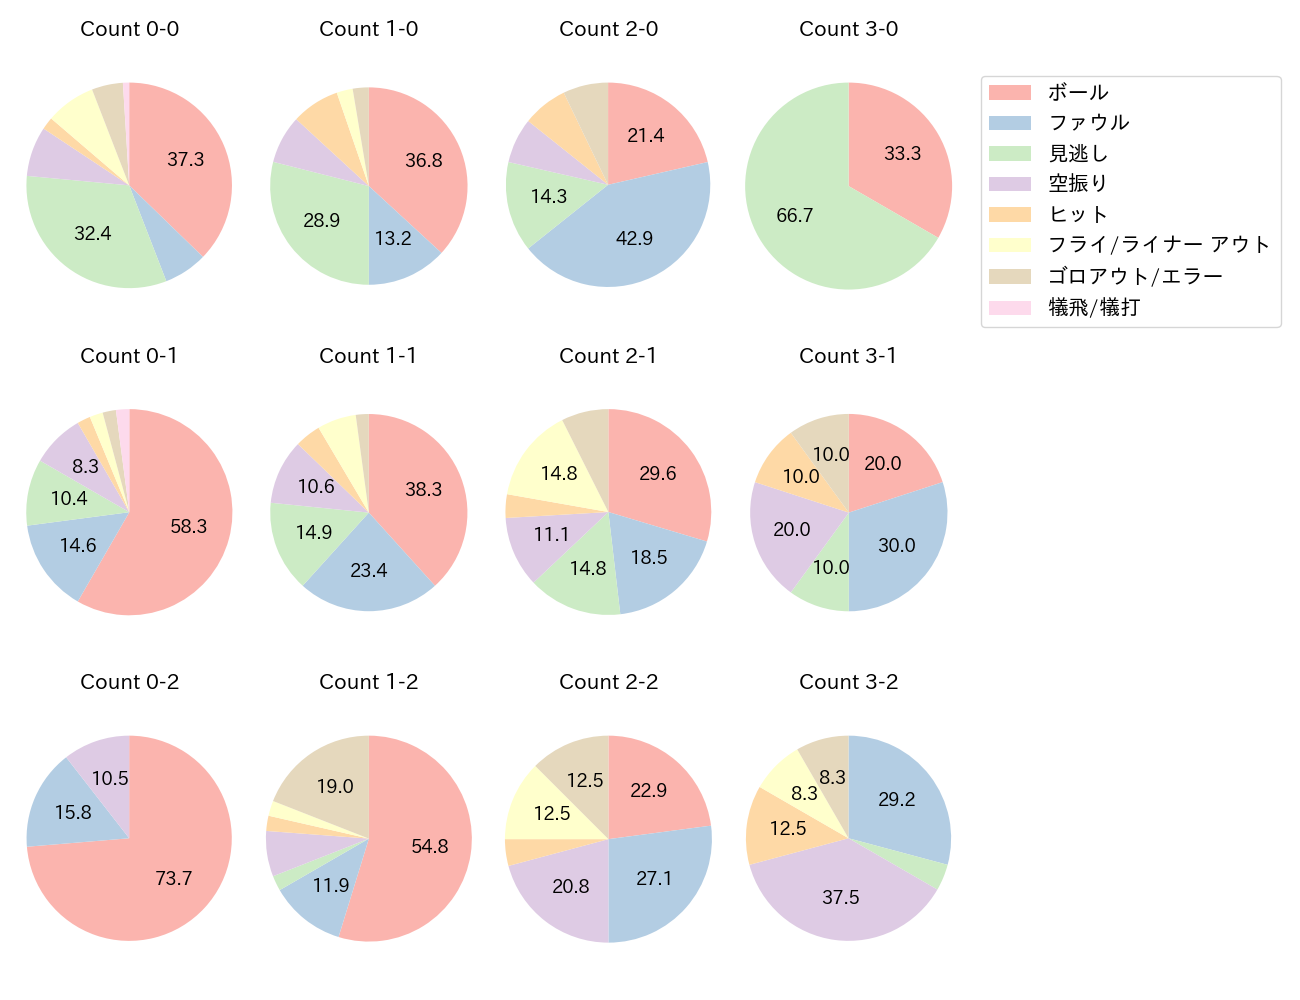 堂林 翔太の球数分布(2021年レギュラーシーズン全試合)